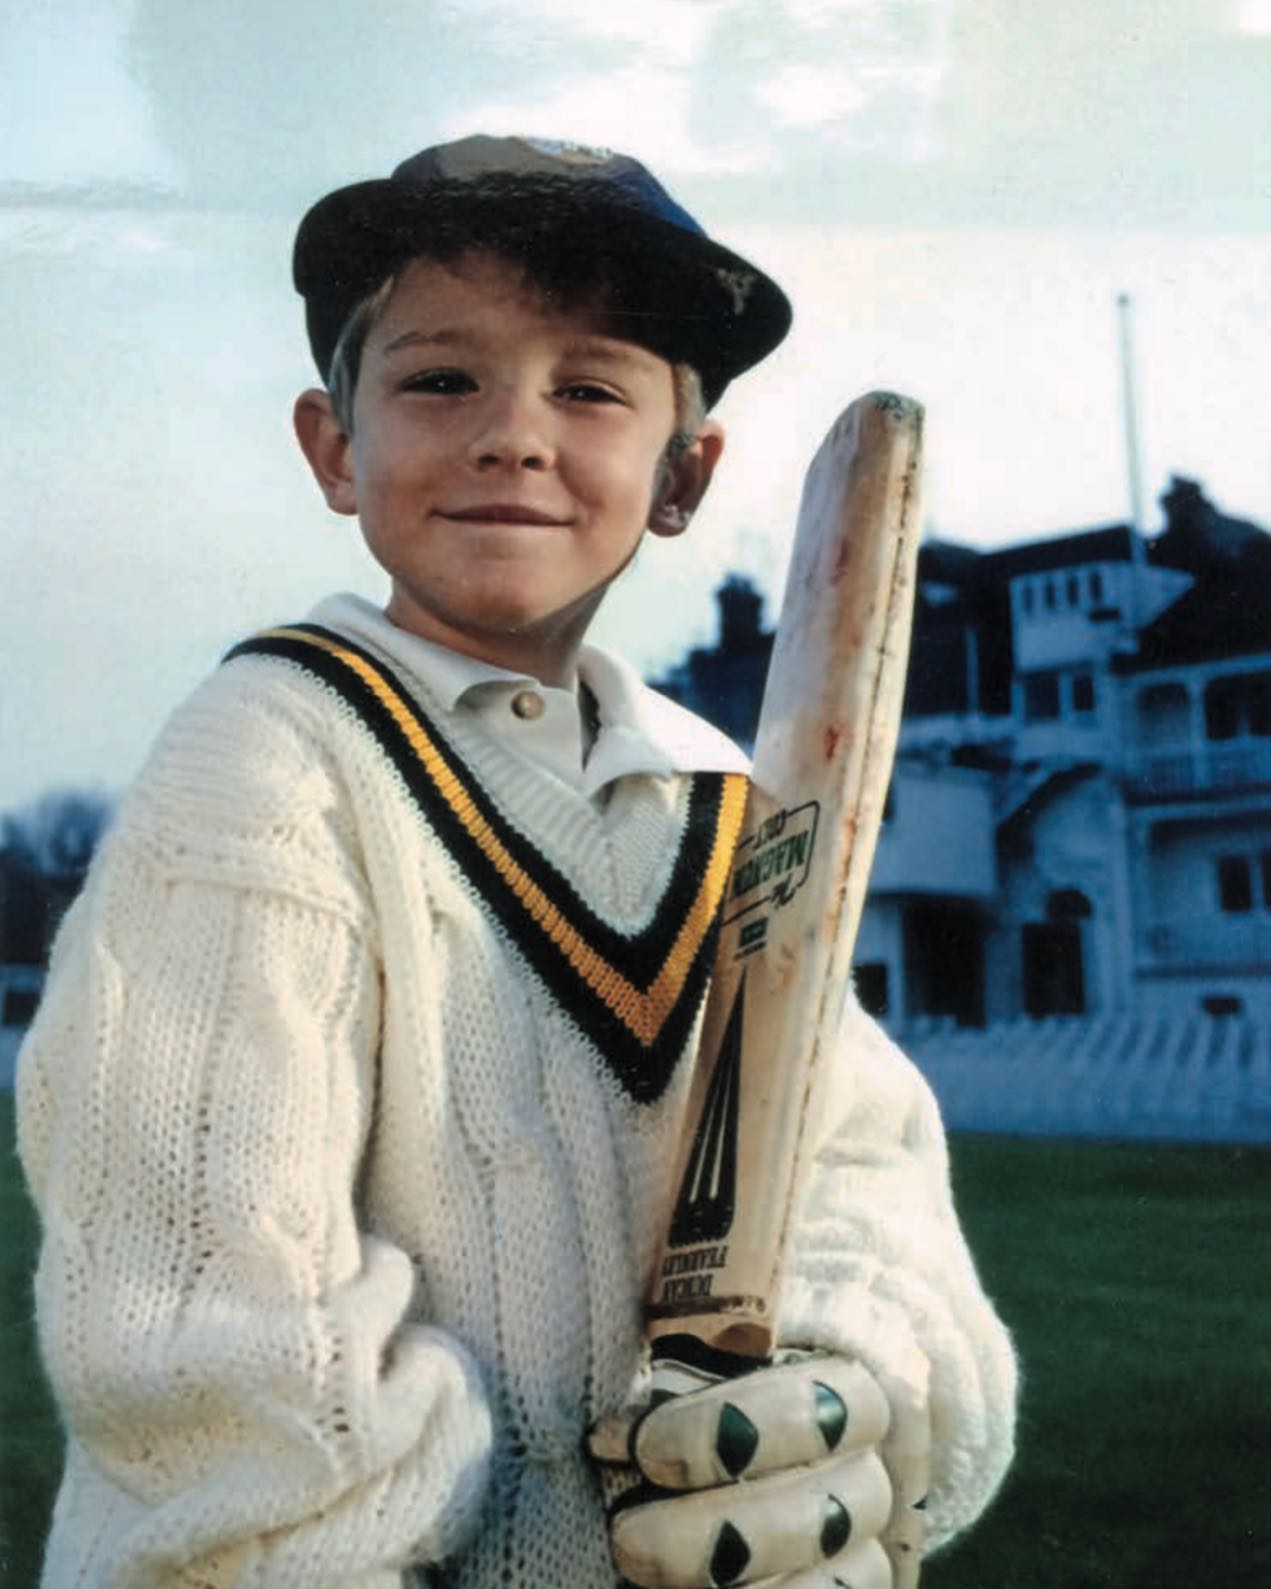 Stuarts Vater Chris war ebenfalls Cricketspieler